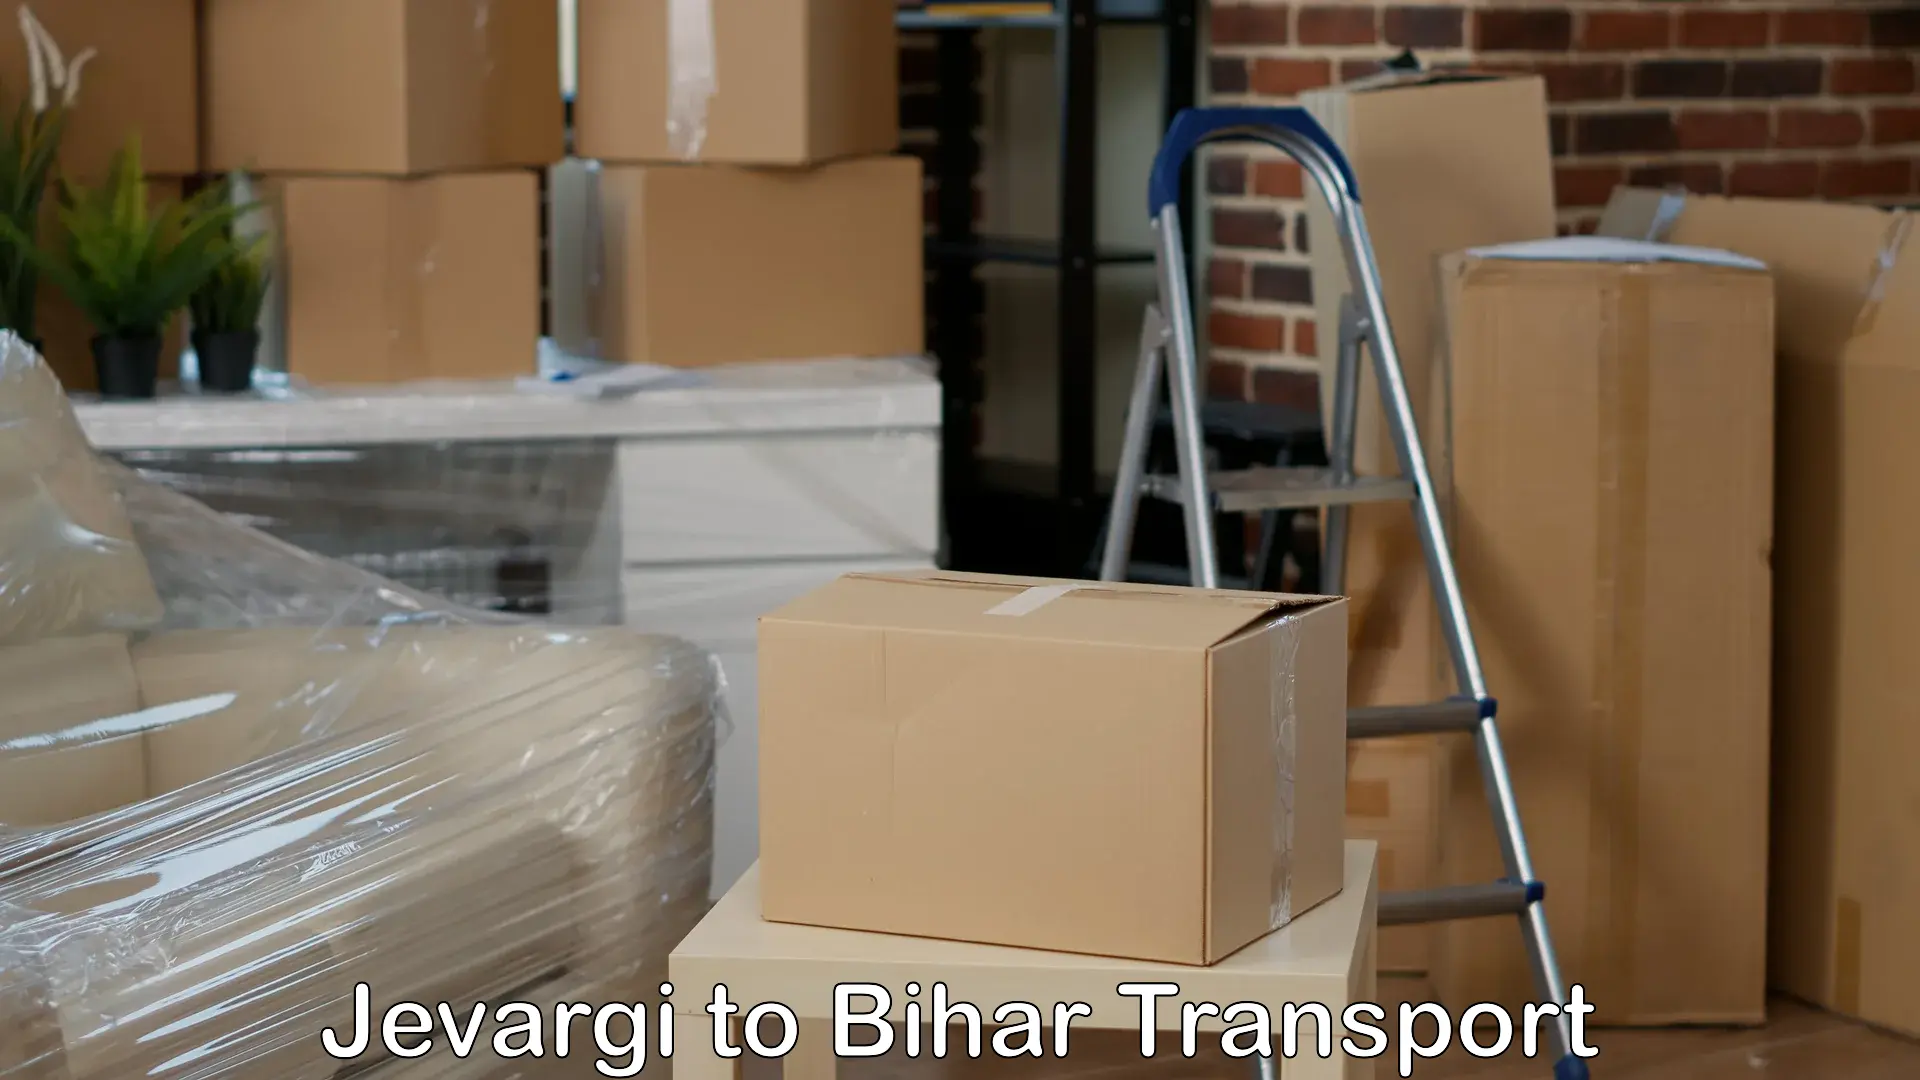 Delivery service Jevargi to Gaya